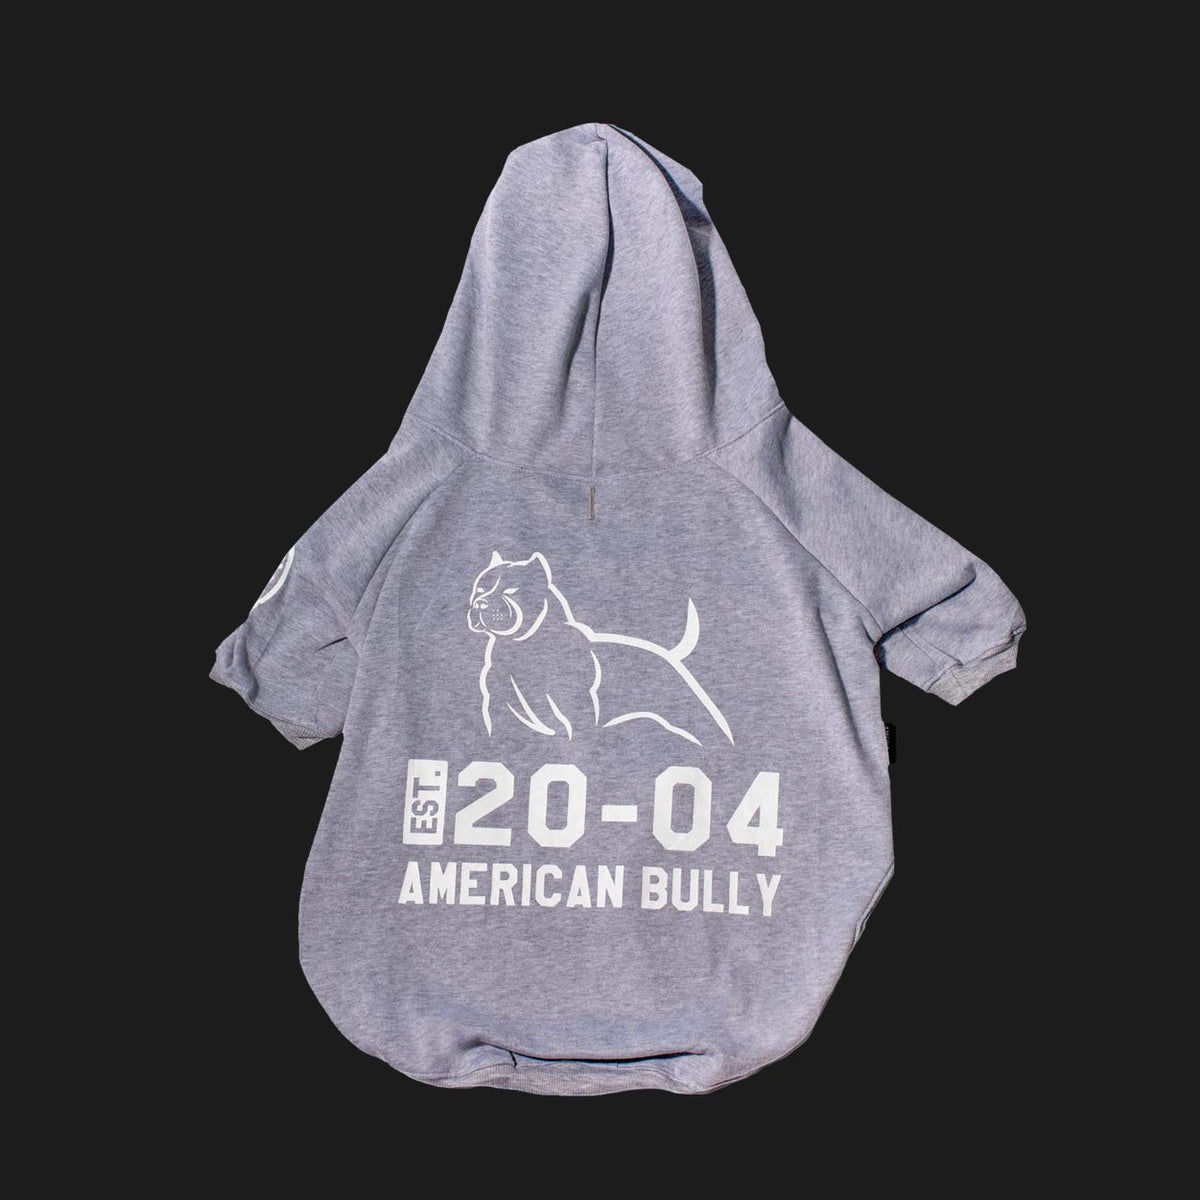 American Bully Dog Apparel Gray Hoodie Sweatshirt Established in 2004